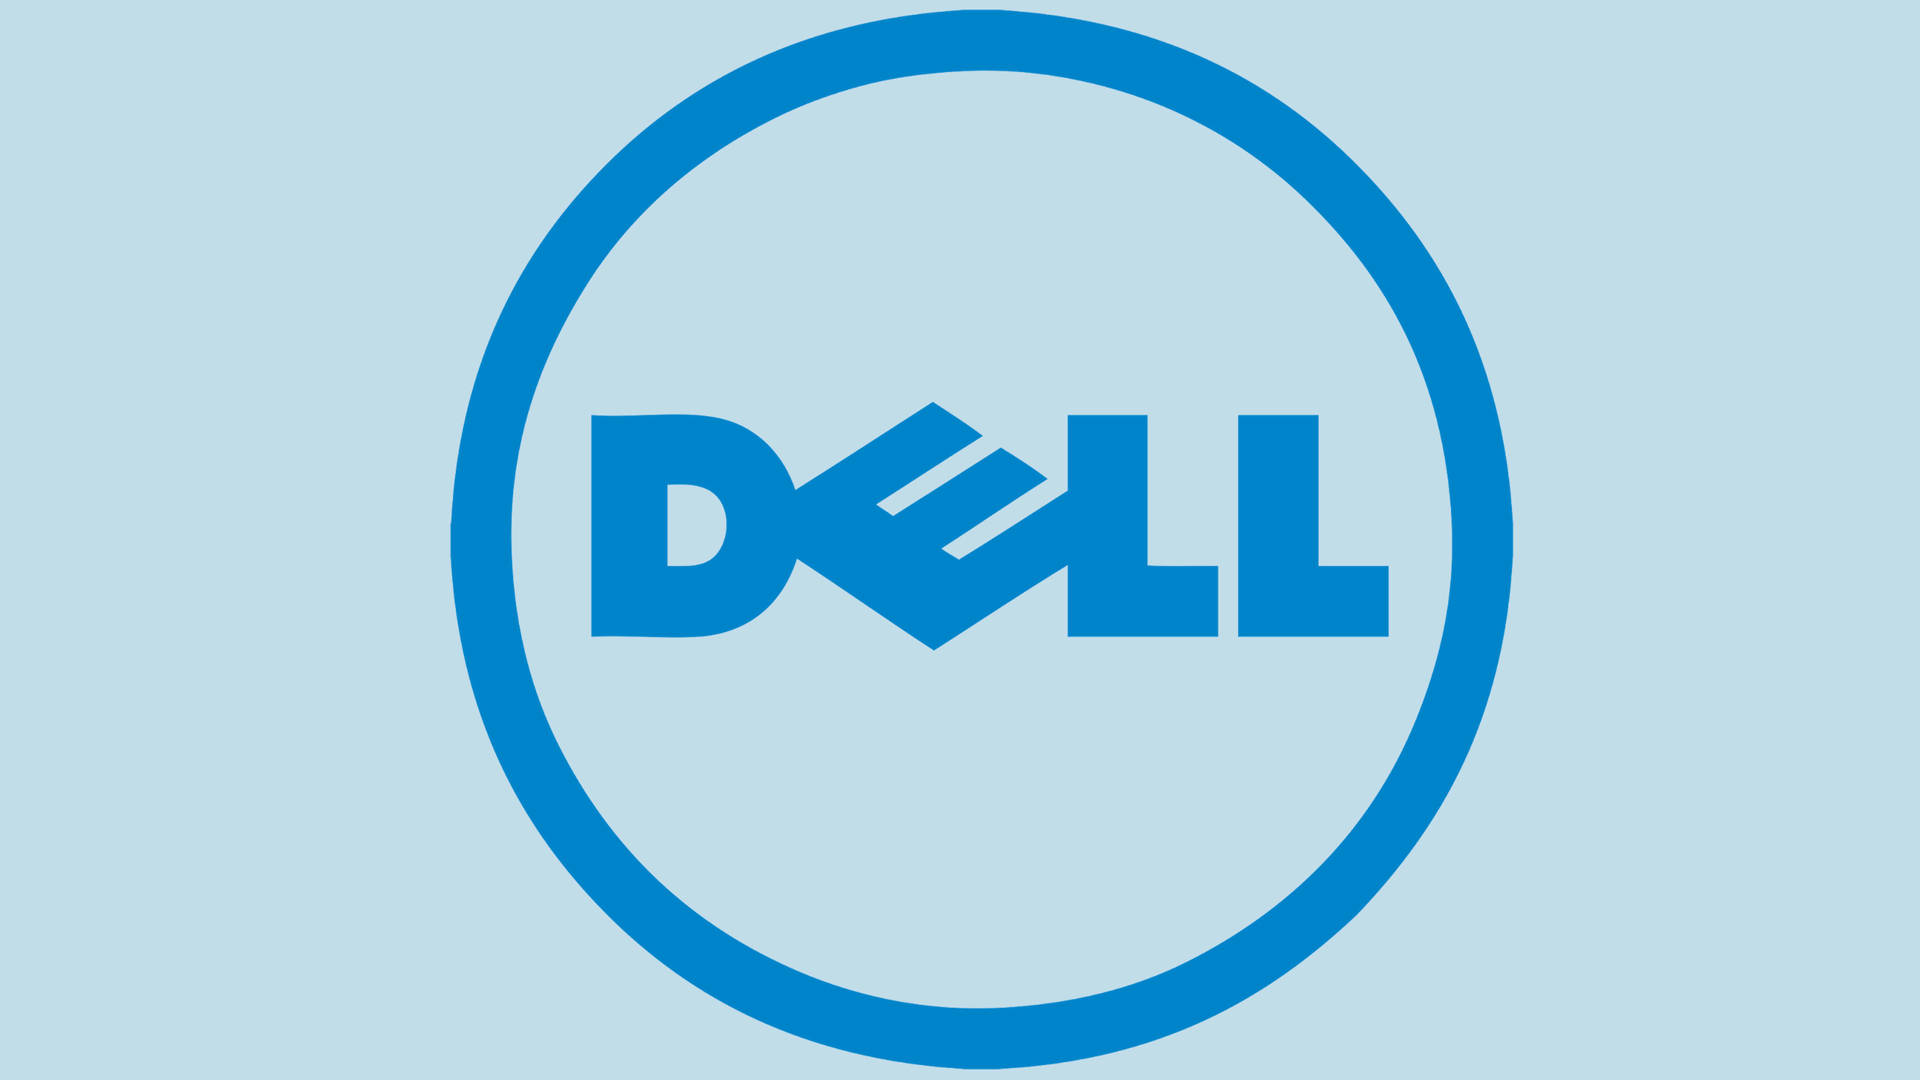 Blåt Dell 4k-logo Wallpaper